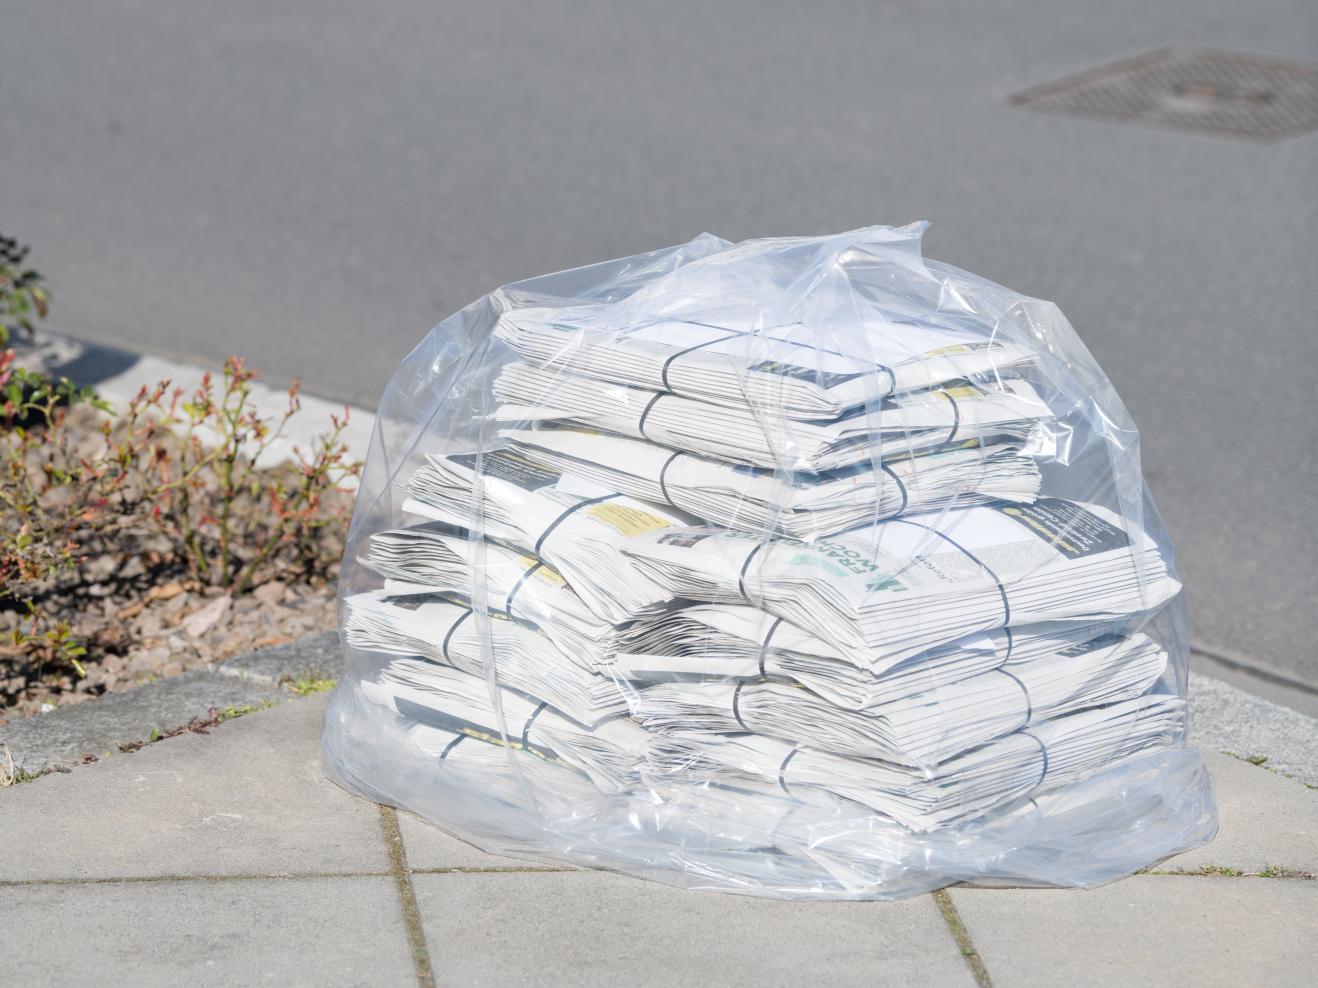 Ein in durchsichtige Plastikfolie gehüllter Stapel von Zeitungen liegt auf einem Bürgersteig in Frankfurt.